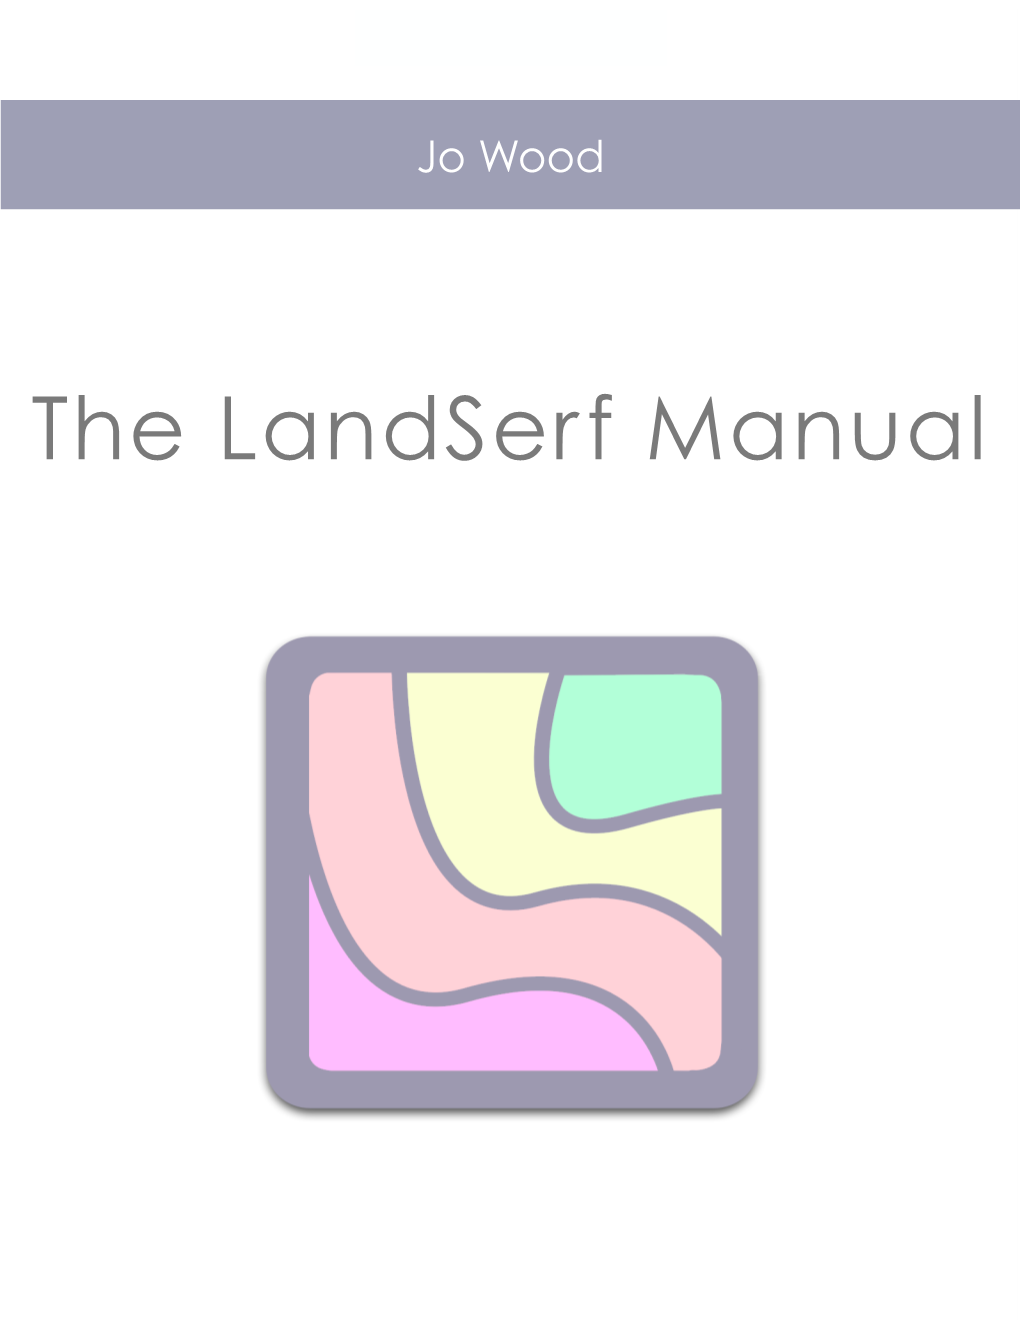 The Landserf Manual the Landserf Manual Version 1.0, 3Rd December 2009 for Landserf 2.3.1 C Jo Wood, 2009